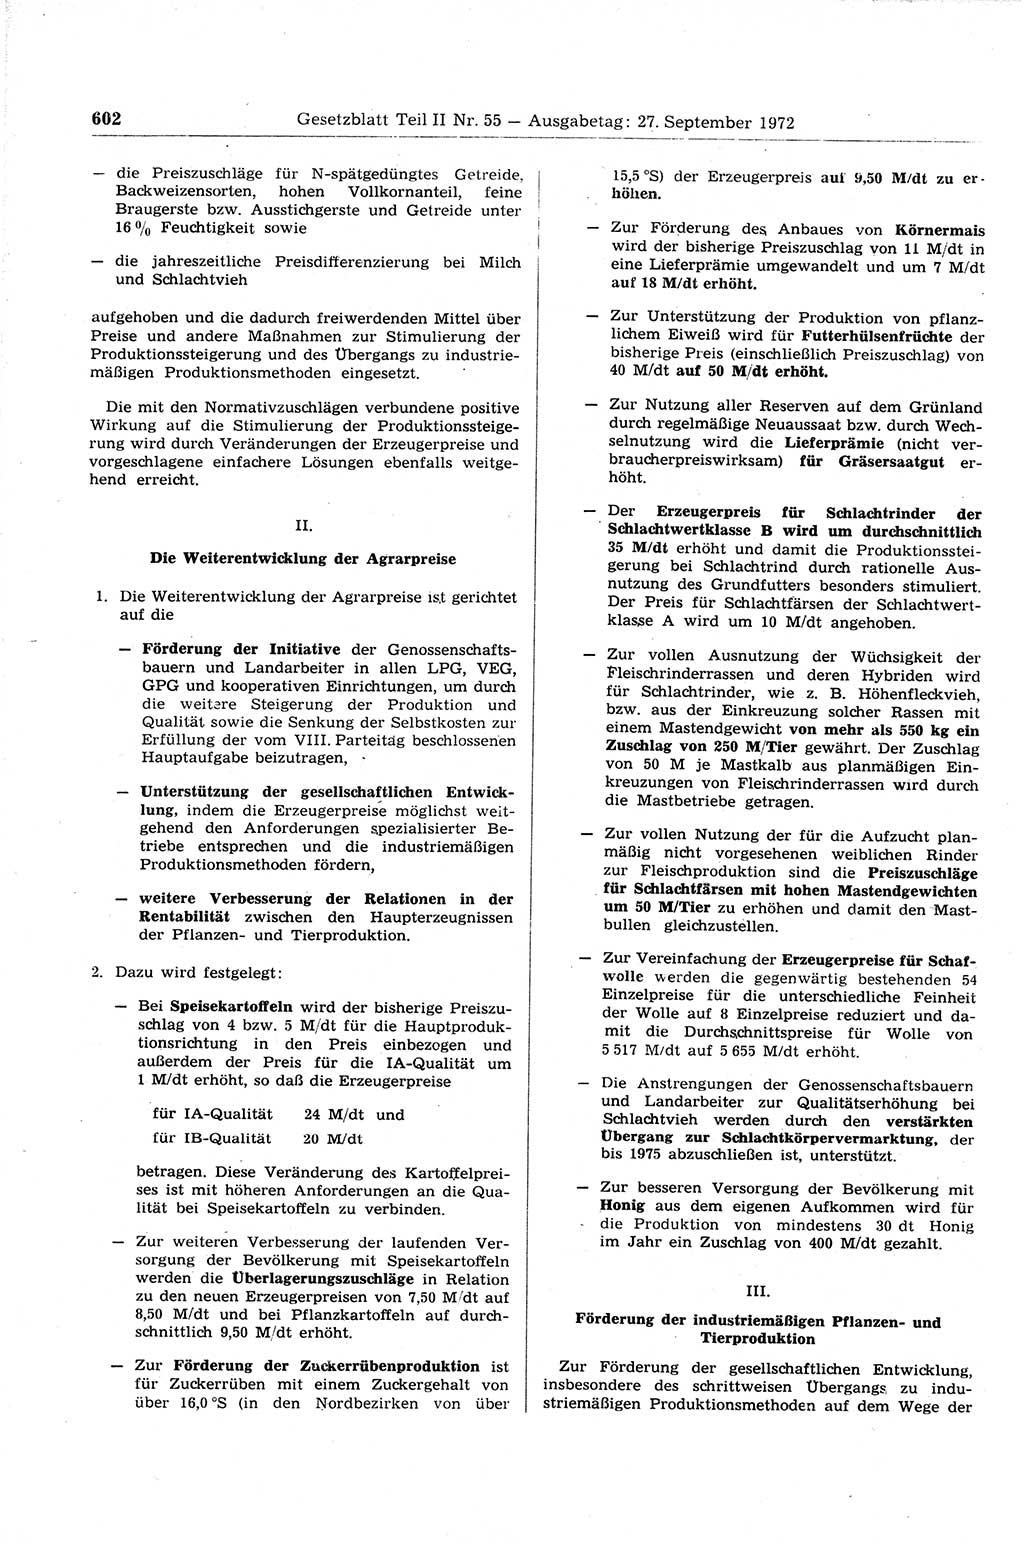 Gesetzblatt (GBl.) der Deutschen Demokratischen Republik (DDR) Teil ⅠⅠ 1972, Seite 602 (GBl. DDR ⅠⅠ 1972, S. 602)